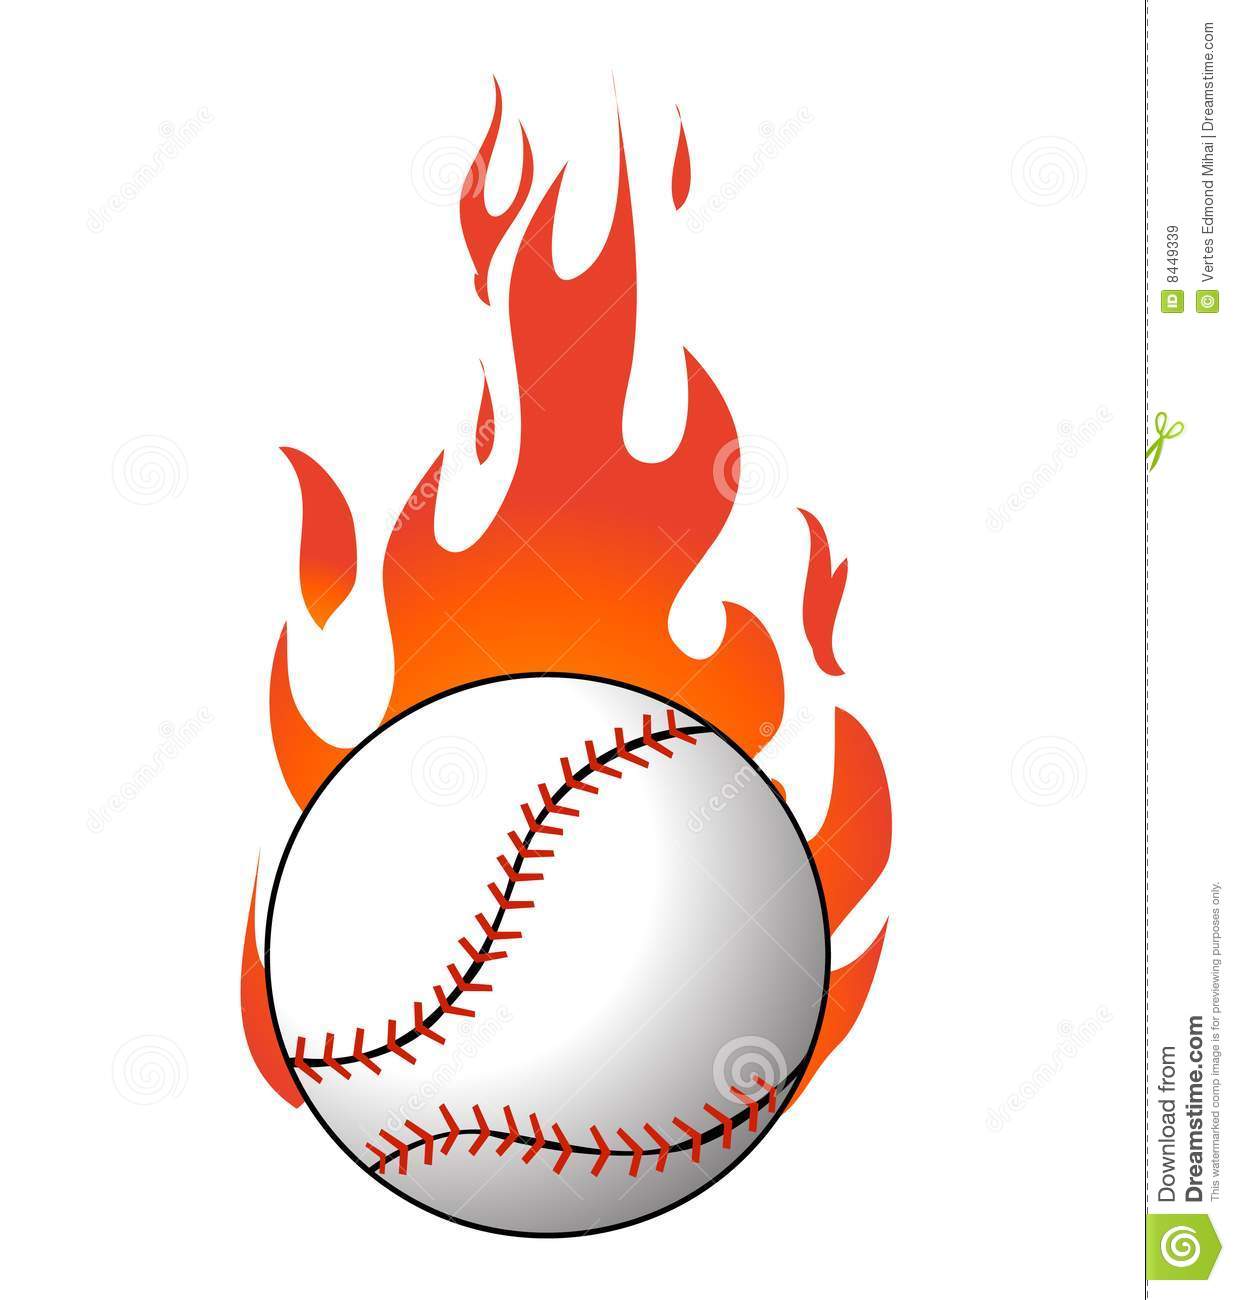 flames clipart baseball